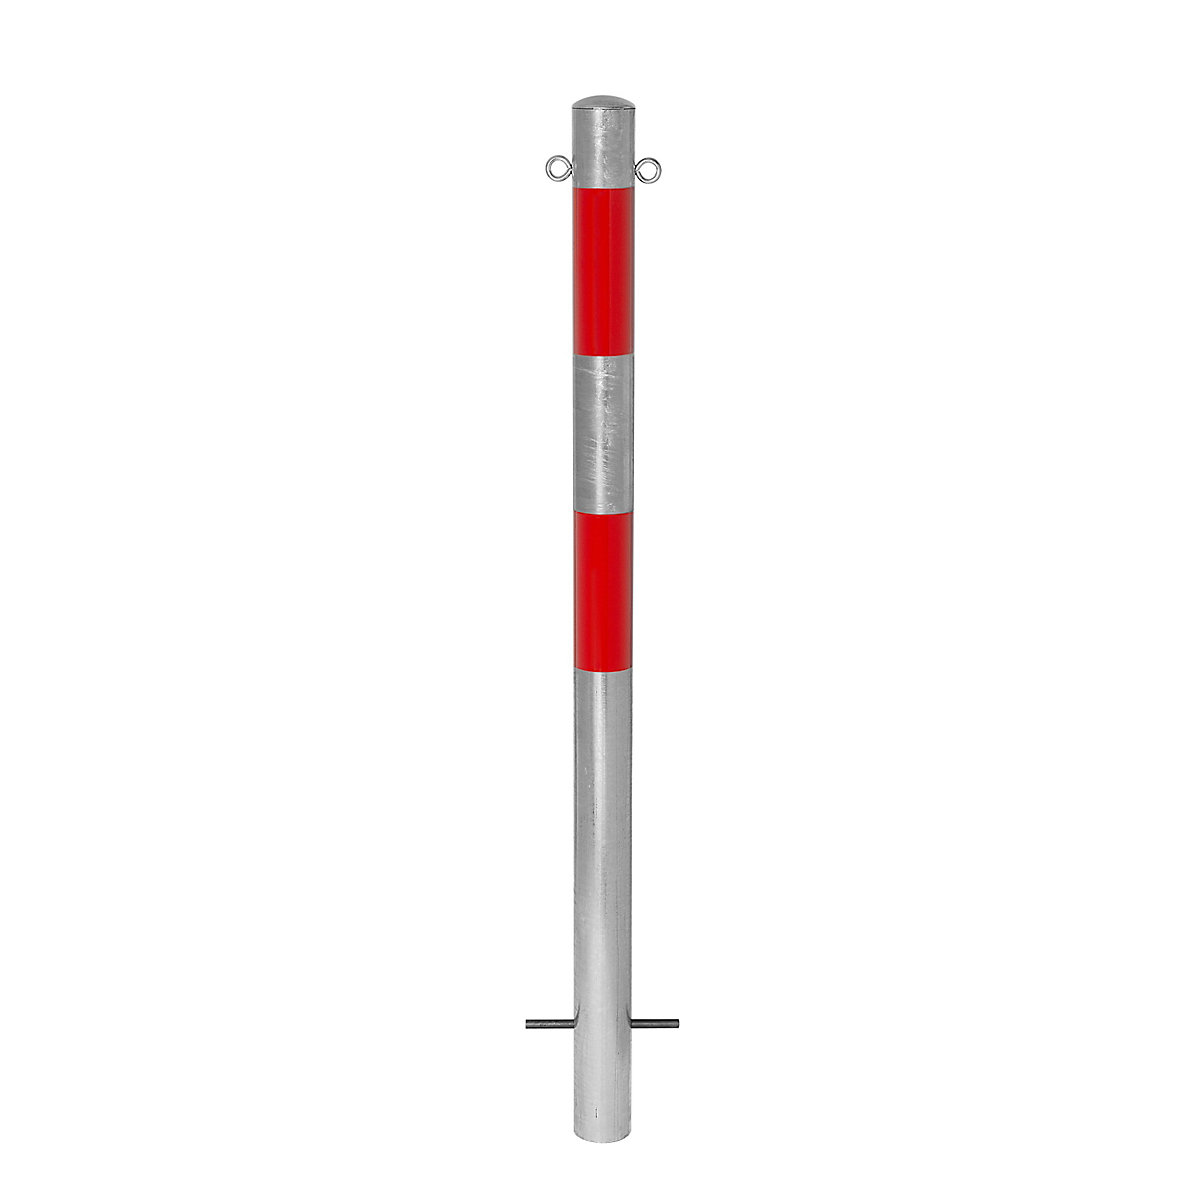 Słupek odgradzający, do wbetonowania, Ø 76 mm, ocynkowany ogniowo / czerwony odblaskowy, 2 zaczepy-7